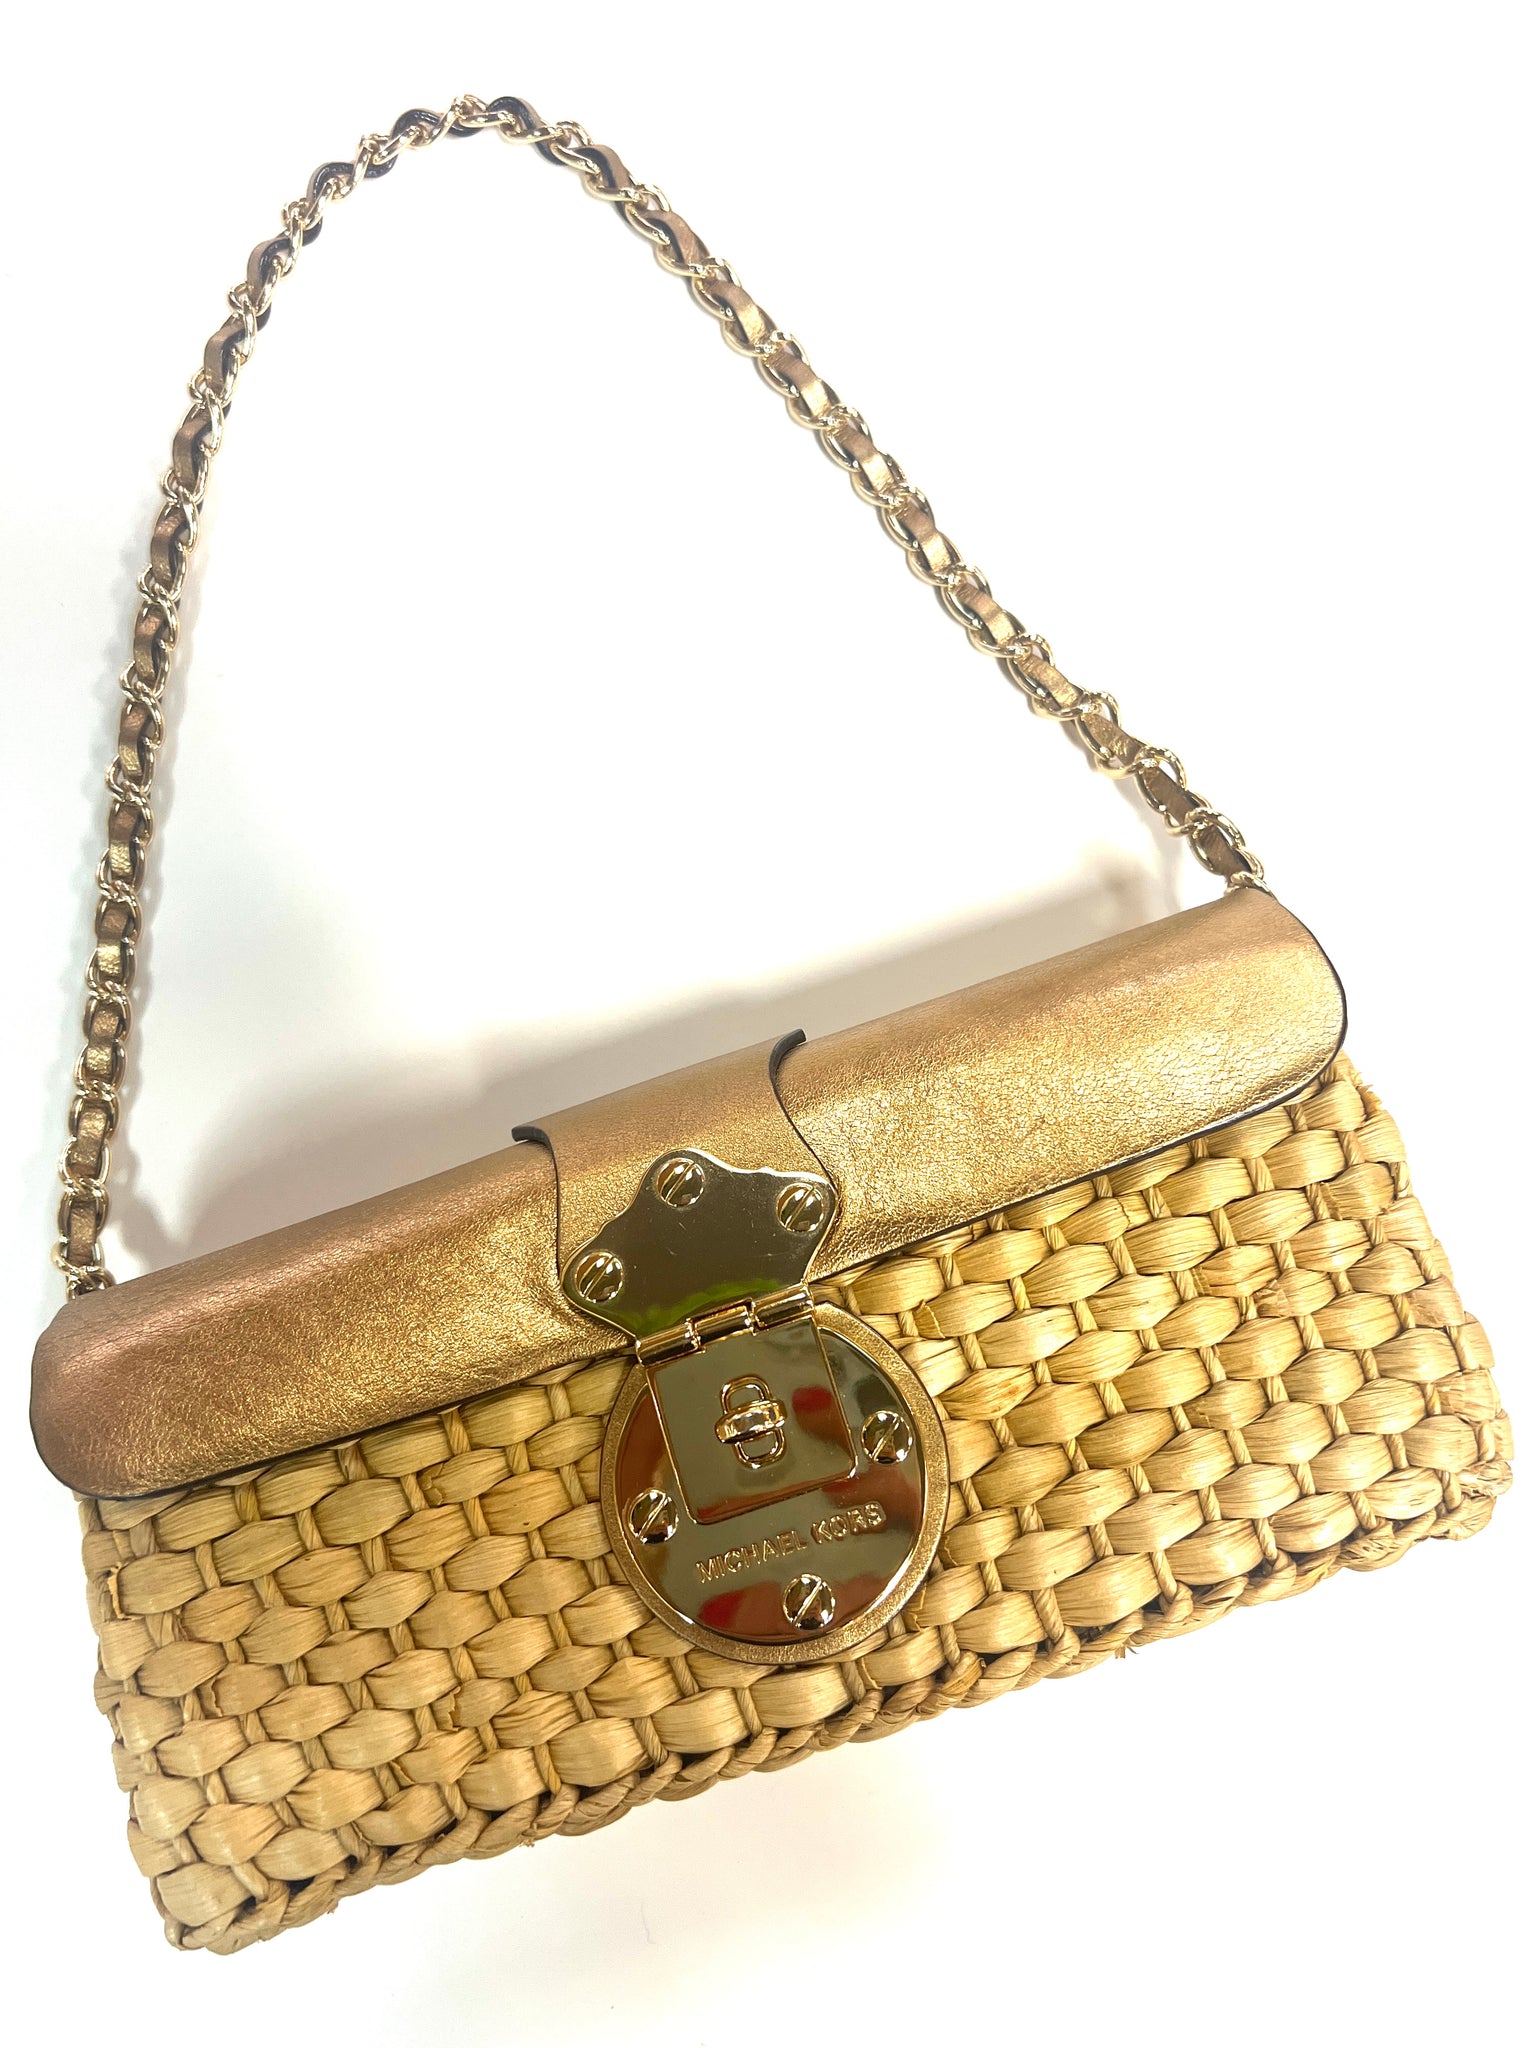 Michael Kors Bedford Large Zip Clutch Bag in Metallic Gold